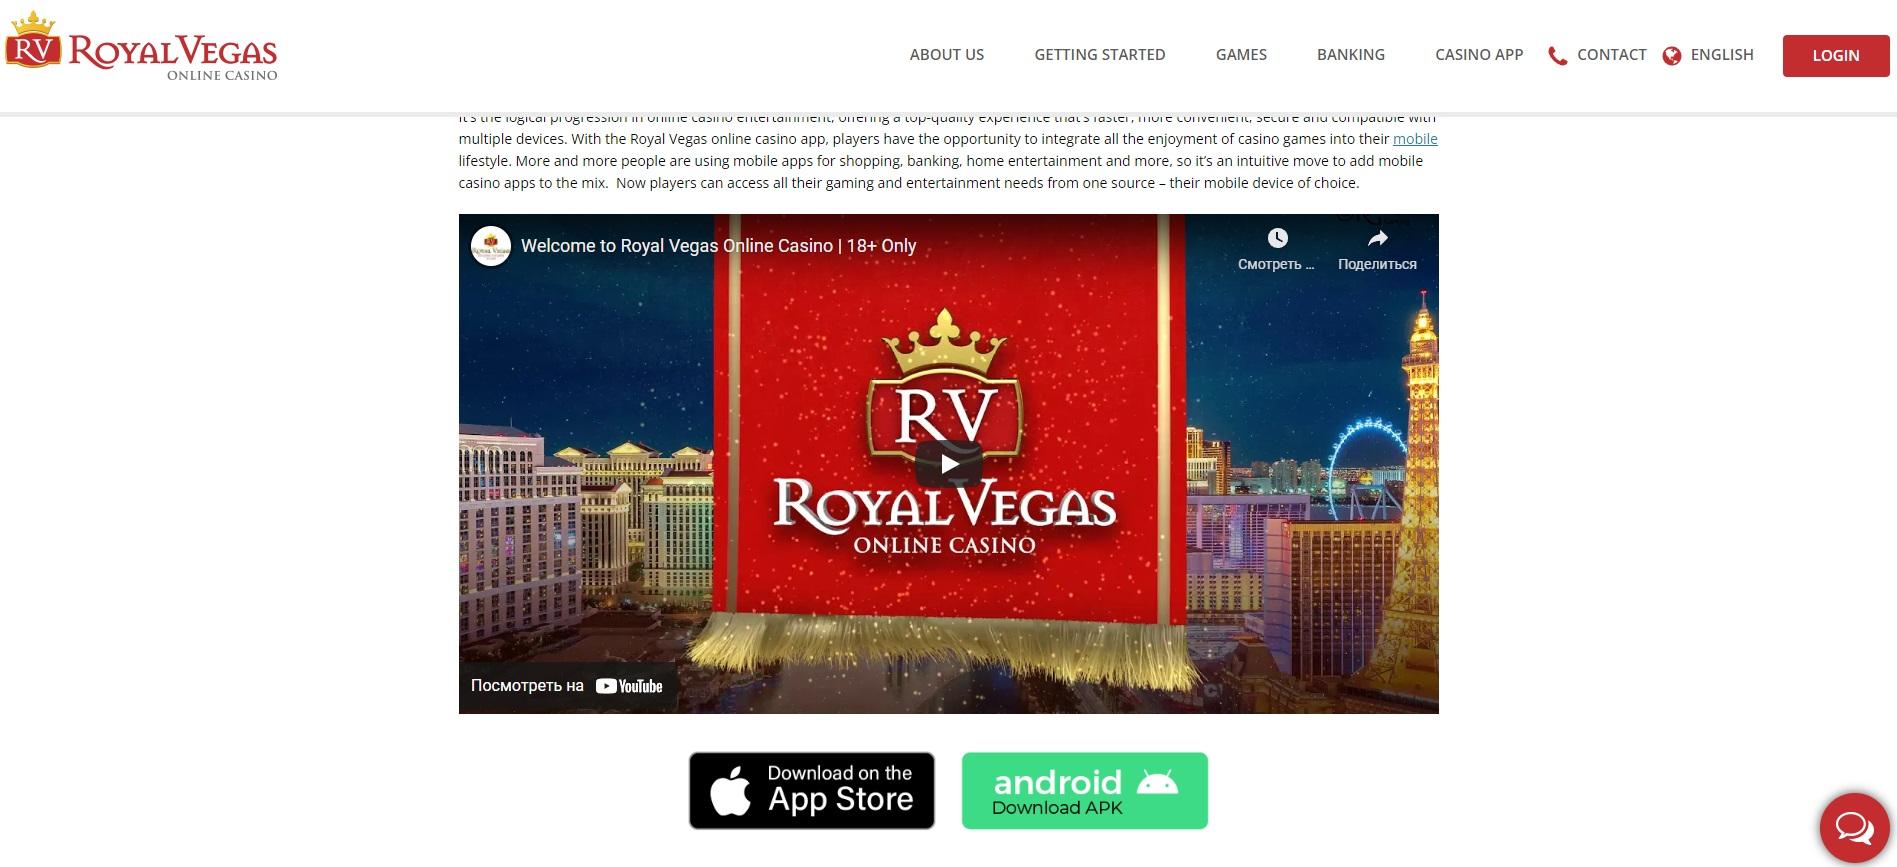 Aplikacja mobilna RoyalVegas